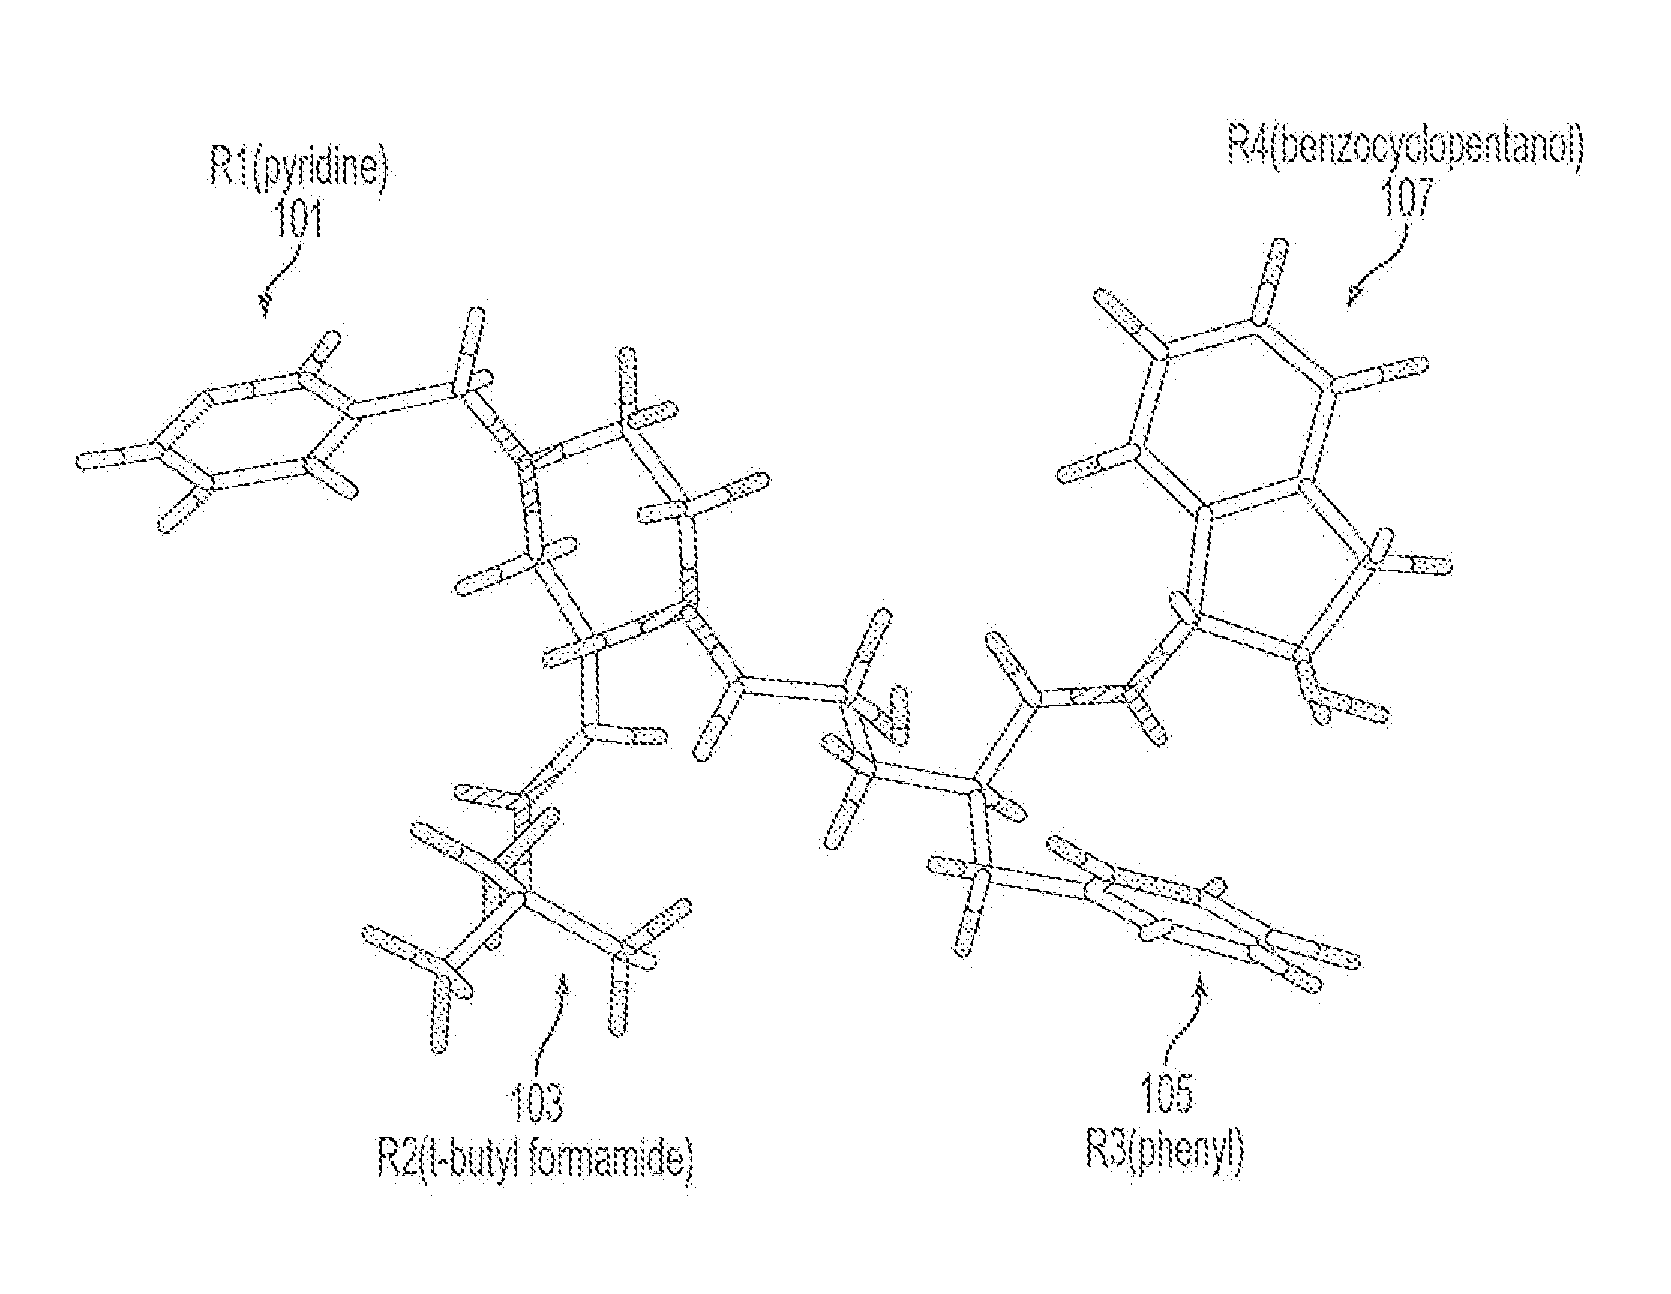 Computer Aided Ligand-Based and Receptor-Based Drug Design Utilizing Molecular Shape and Electrostatic Complementarity